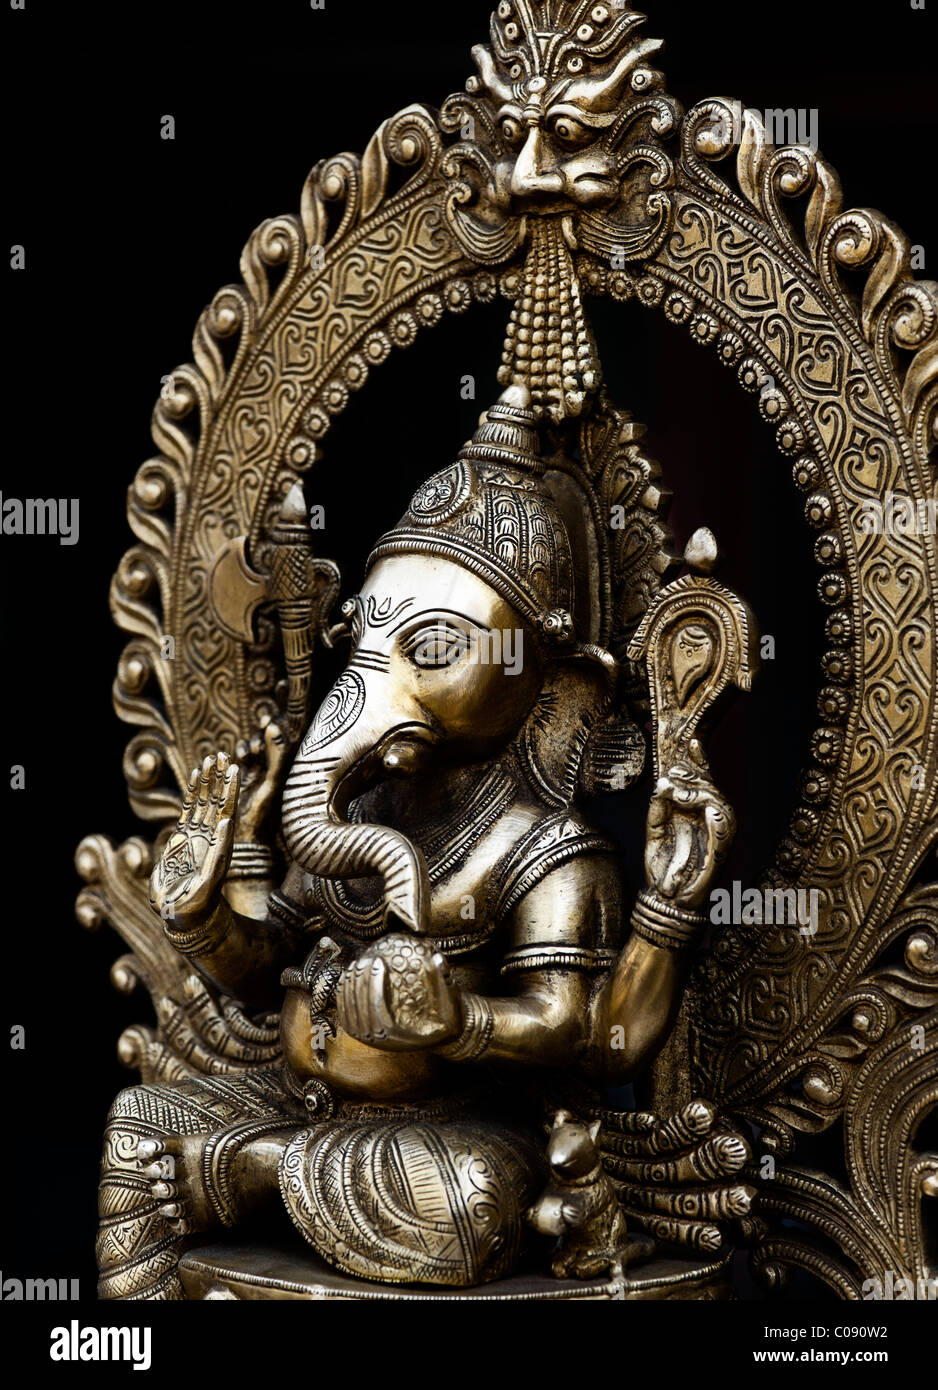 Lord Ganesha statue the hindu elephant god against black background Stock  Photo - Alamy